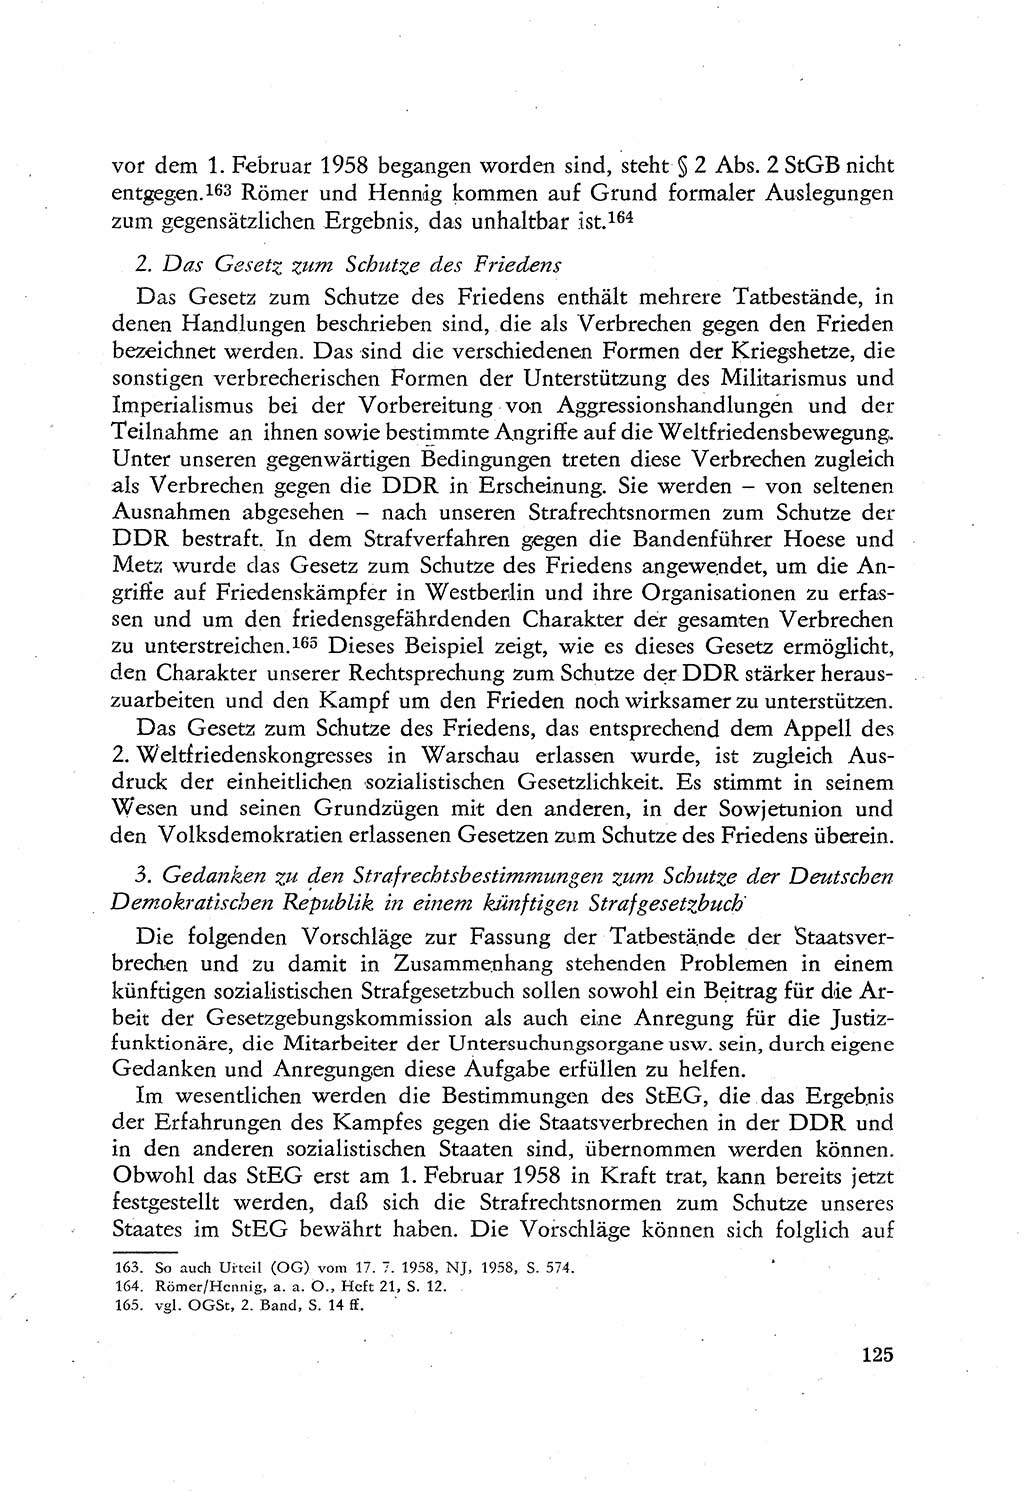 Beiträge zum Strafrecht [Deutsche Demokratische Republik (DDR)], Staatsverbrechen 1959, Seite 125 (Beitr. Strafr. DDR St.-Verbr. 1959, S. 125)